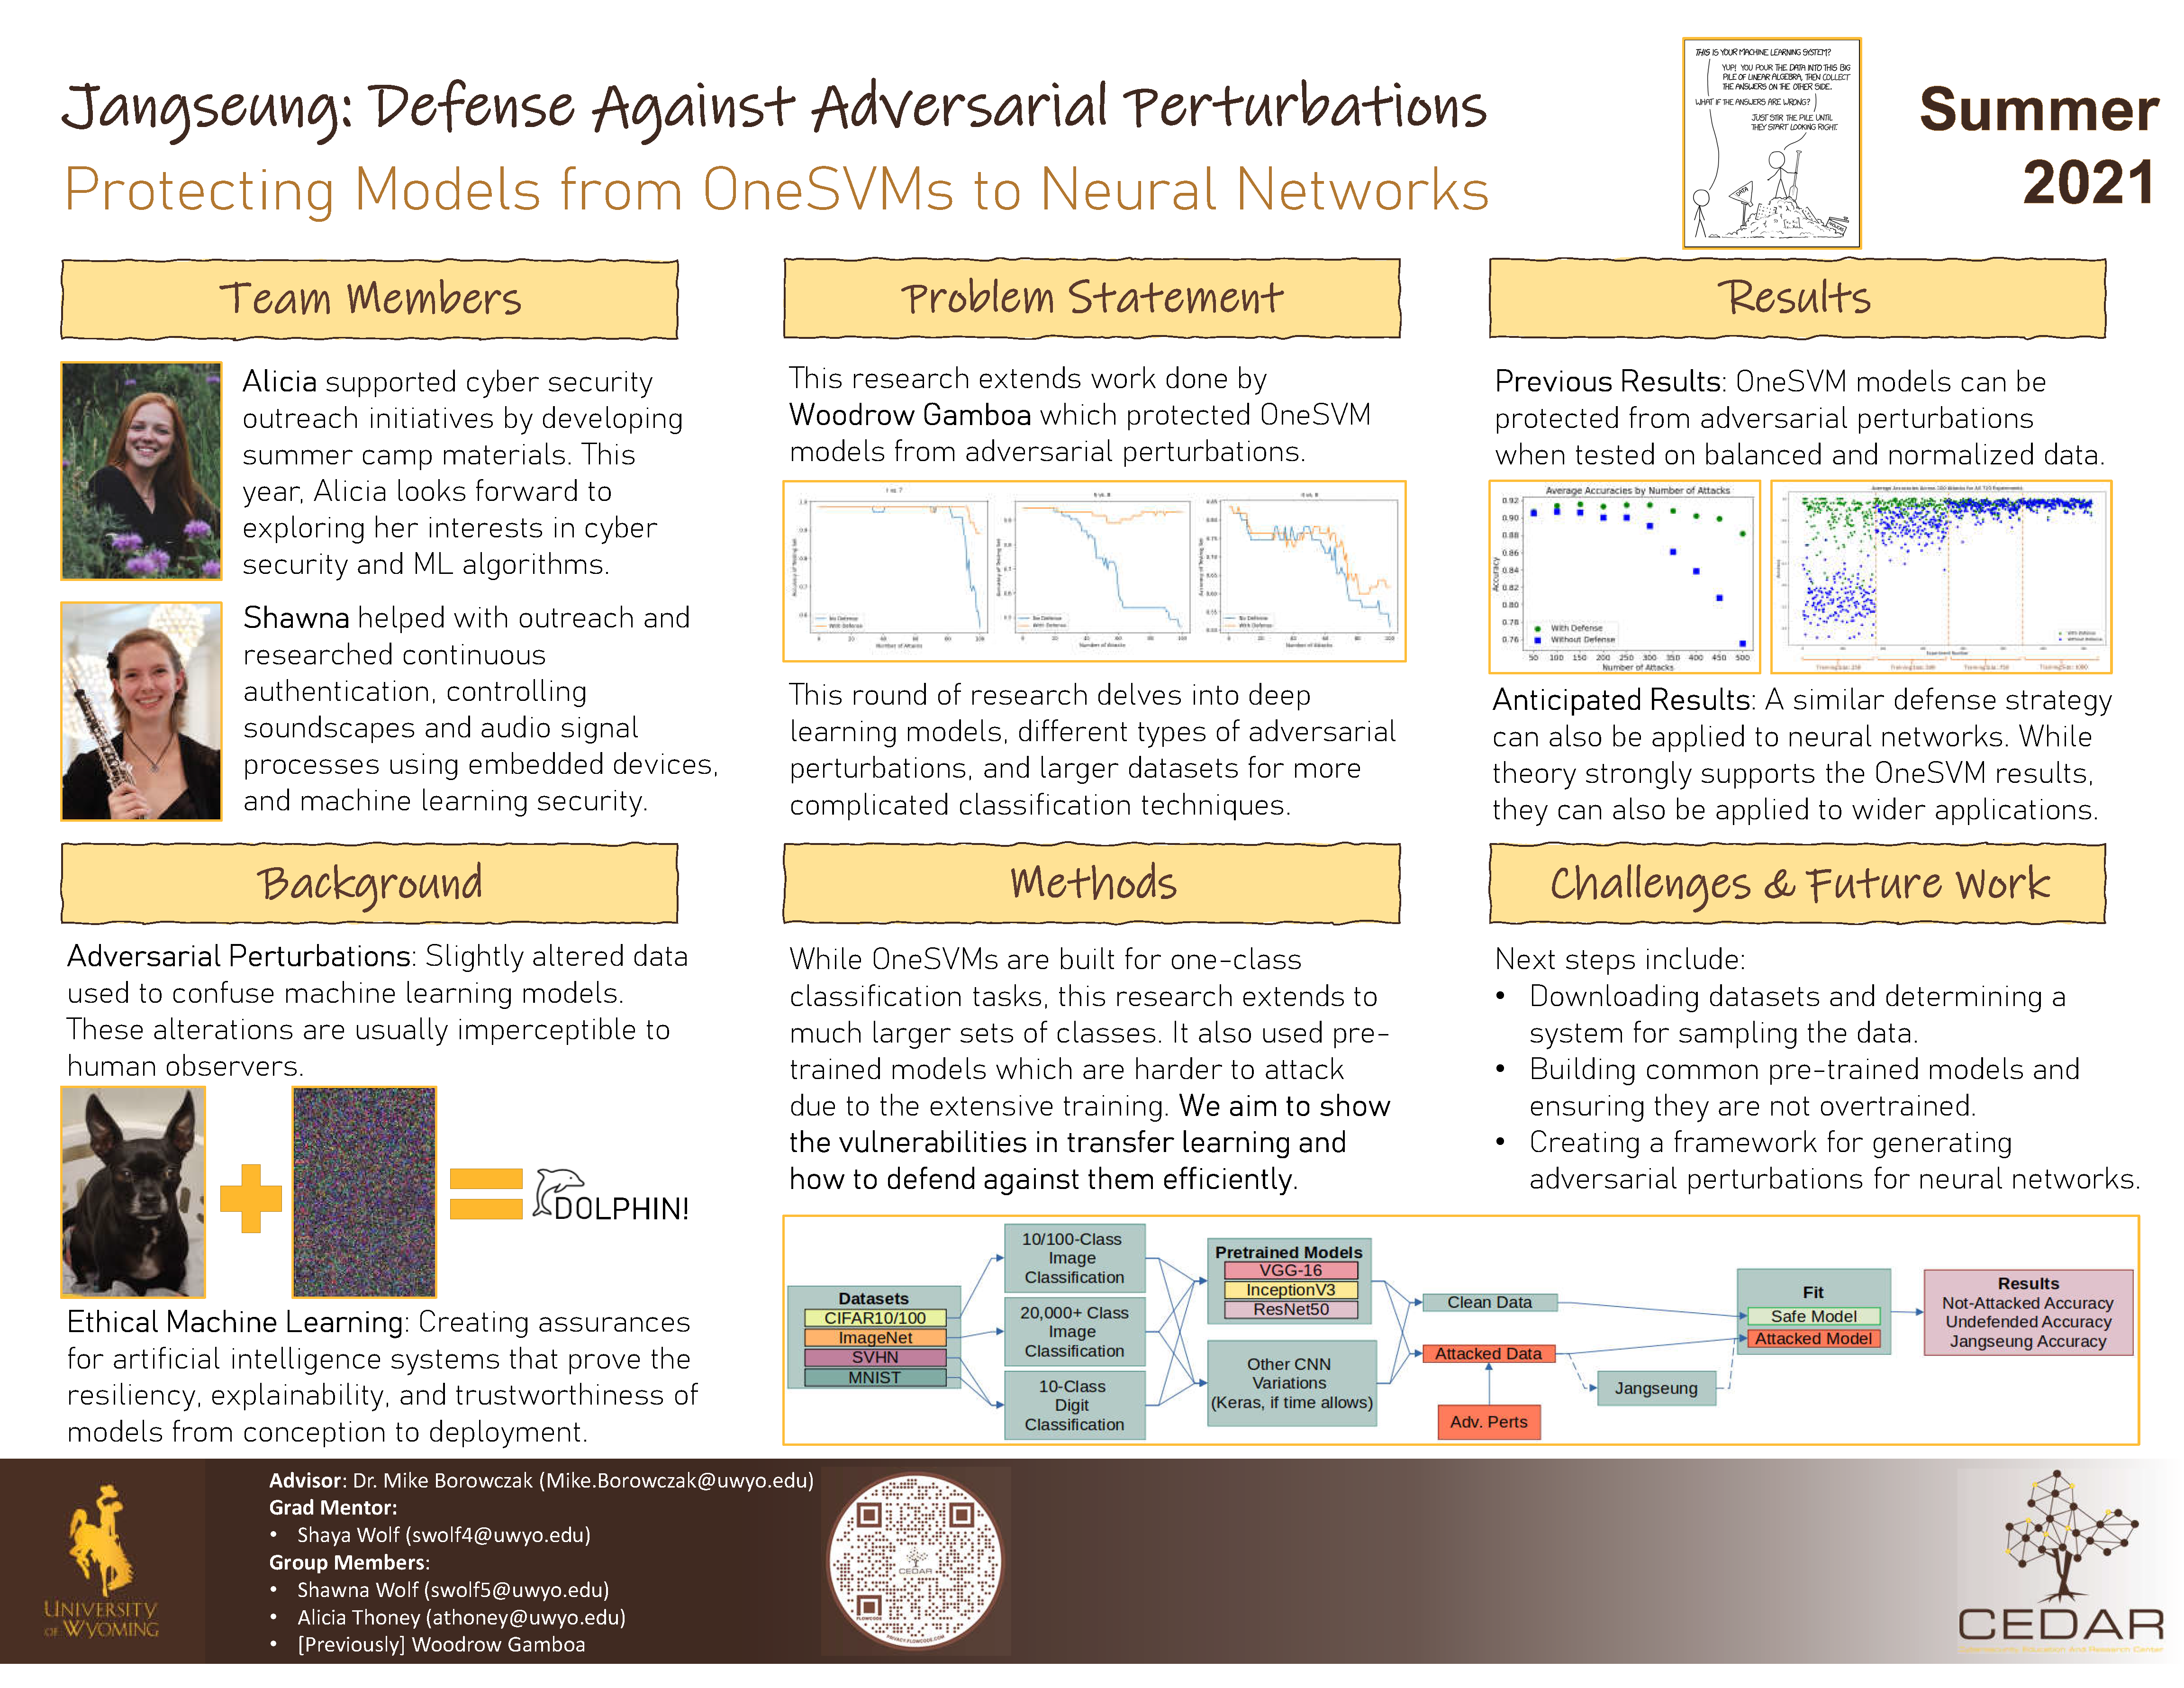  Poster for Jangseung: Defense Against Adversarial Perterbations